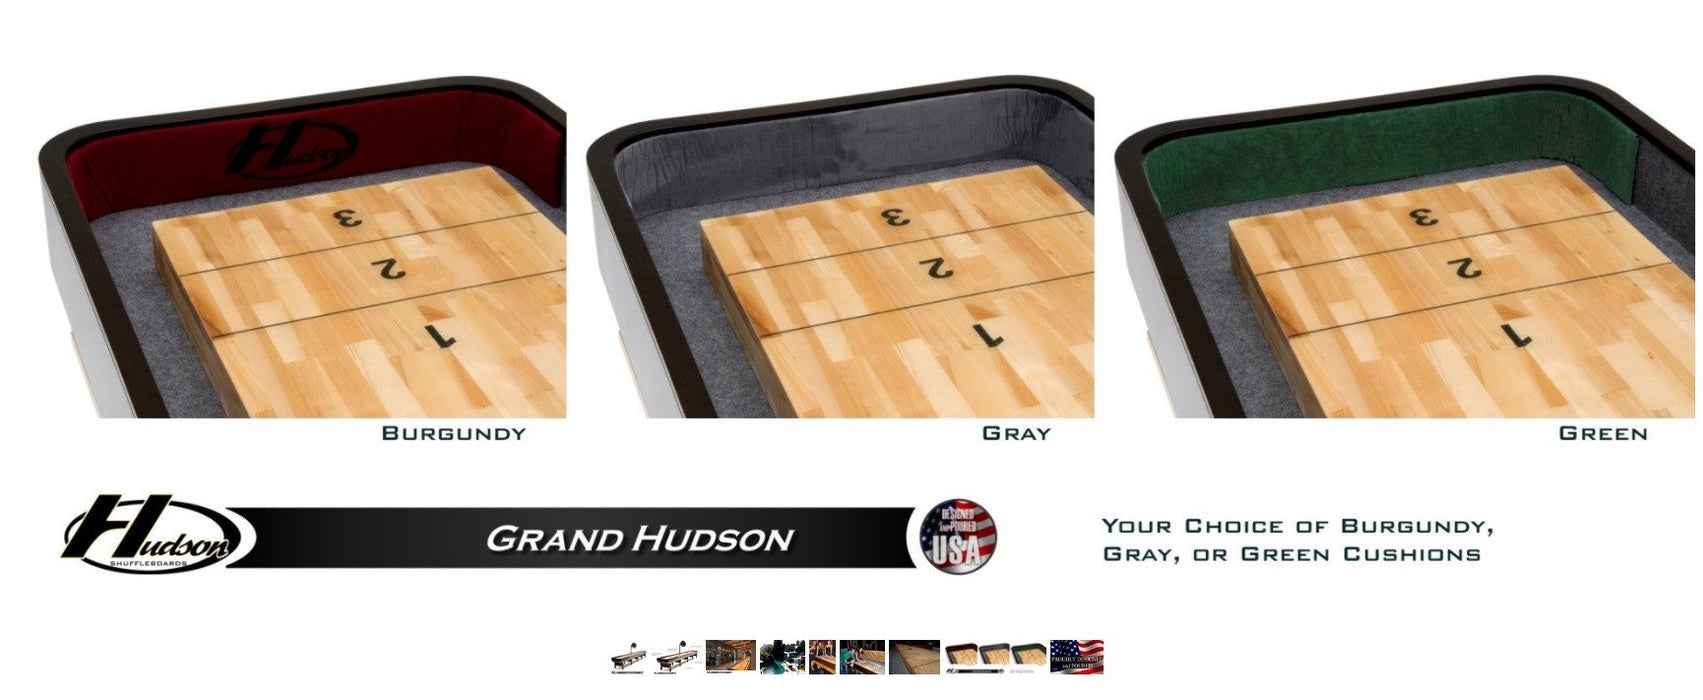 Hudson 16' Grand Hudson Shuffleboard Table